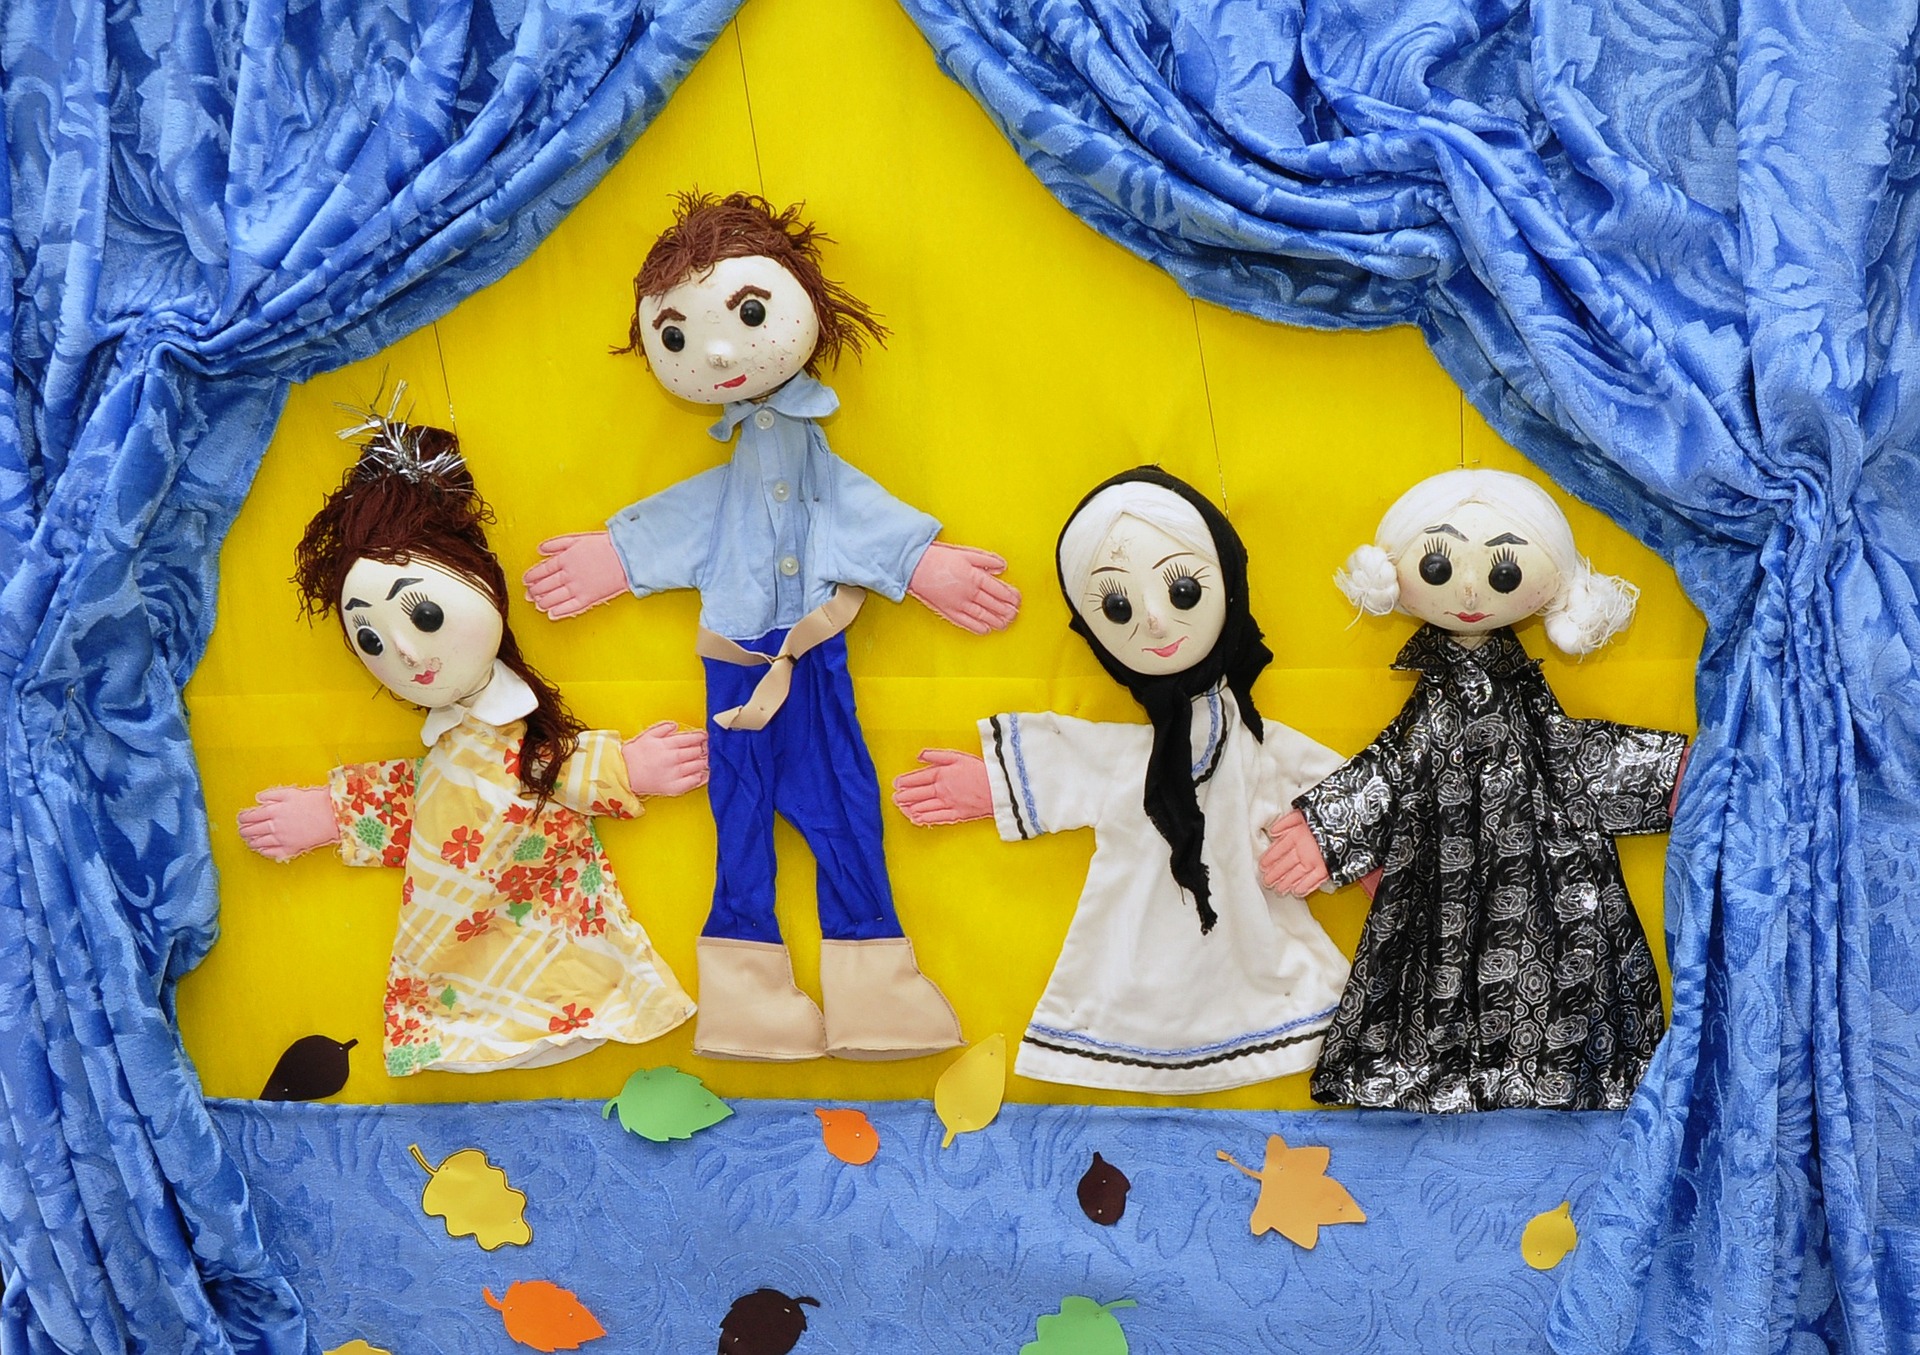 Cuatro marionetas diferentes en un guiñol con telón azul y fondo amarillo.